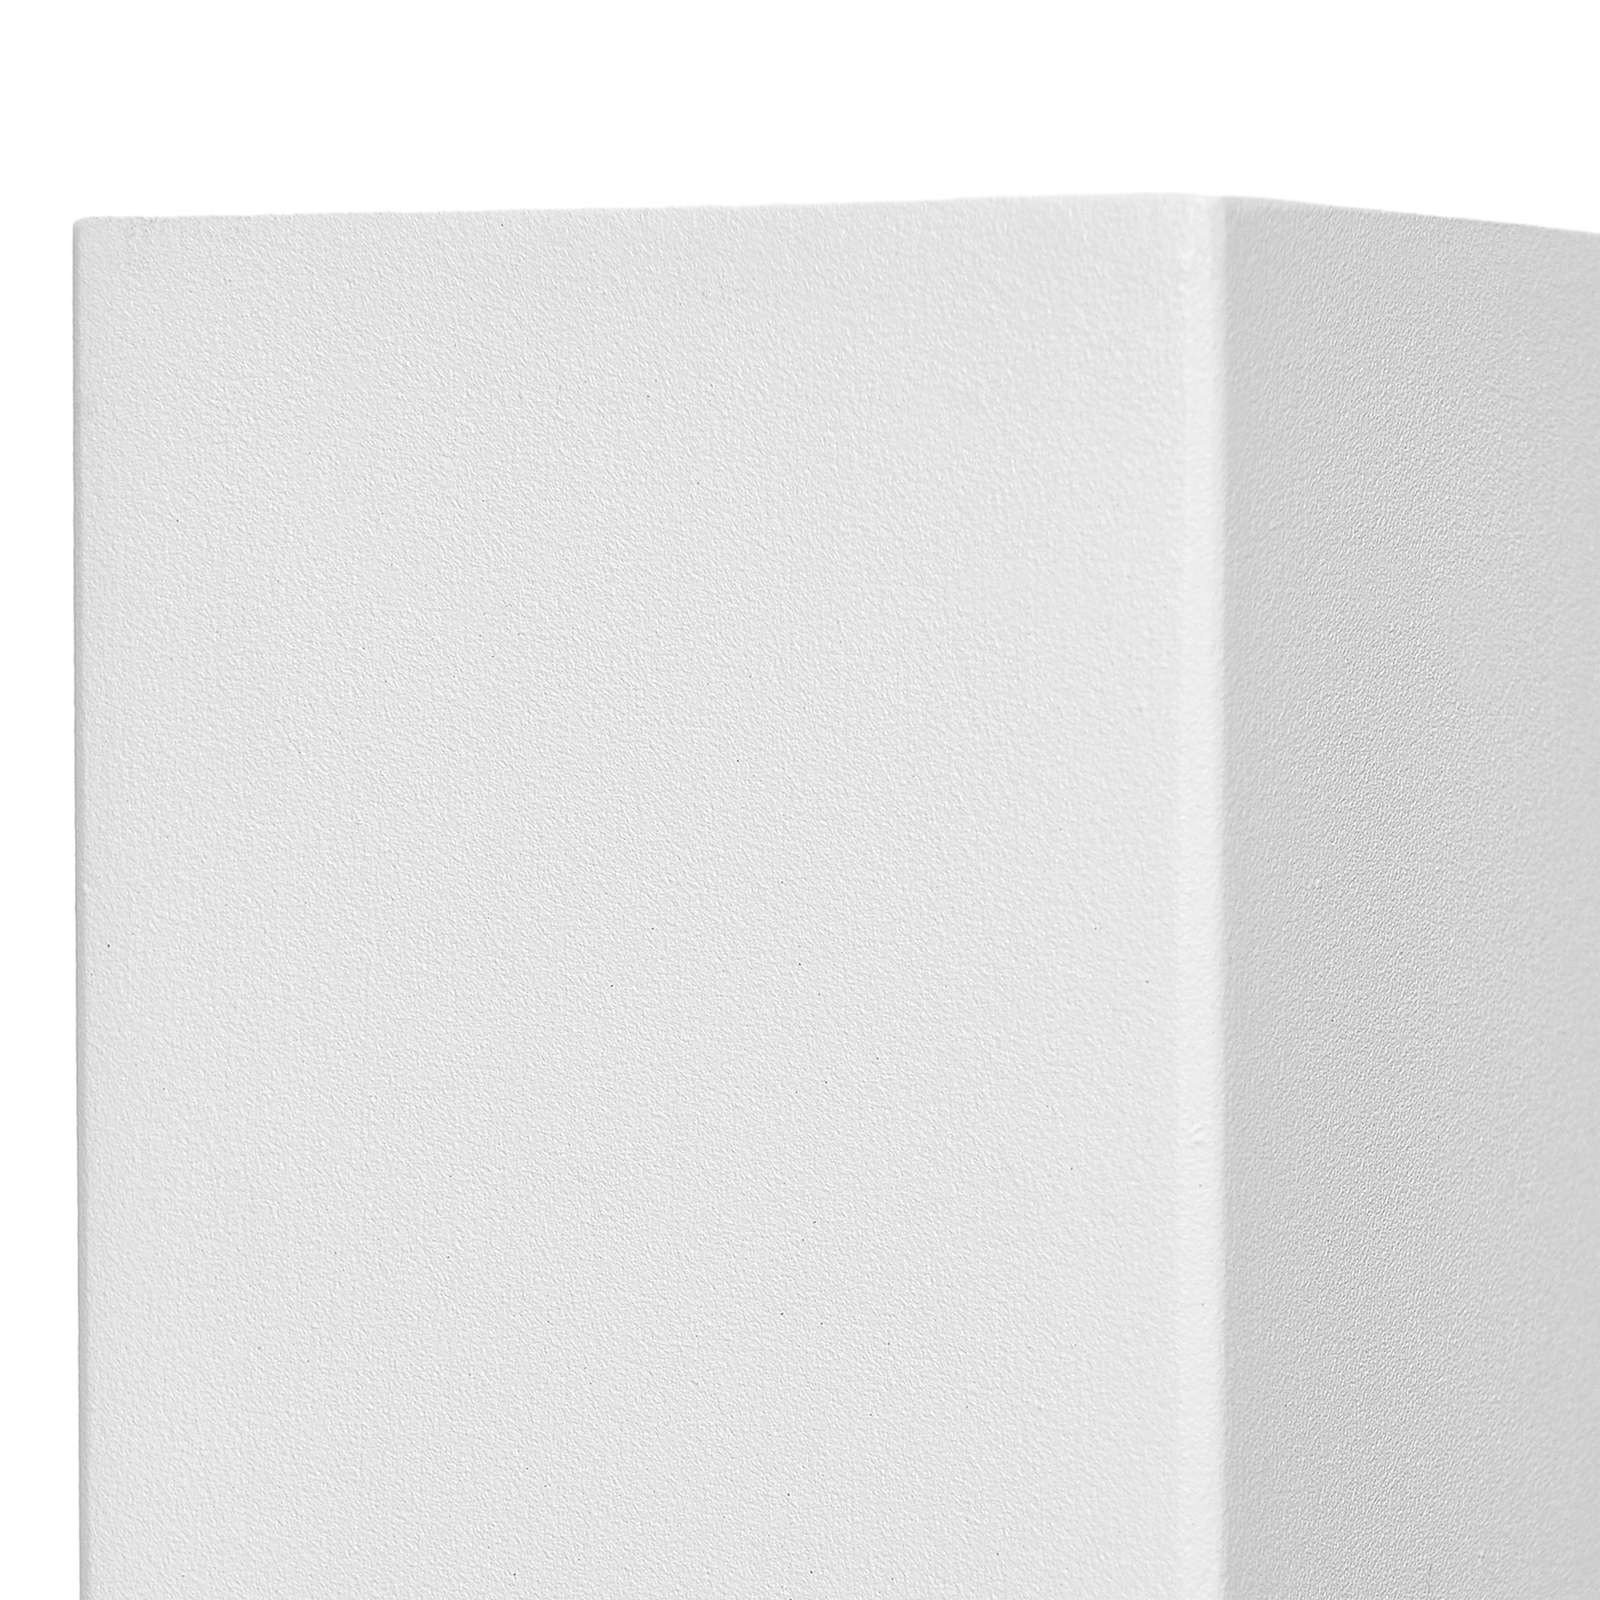 Prios aplique de exterior Tetje, blanco, angular, 16 cm, set de 4